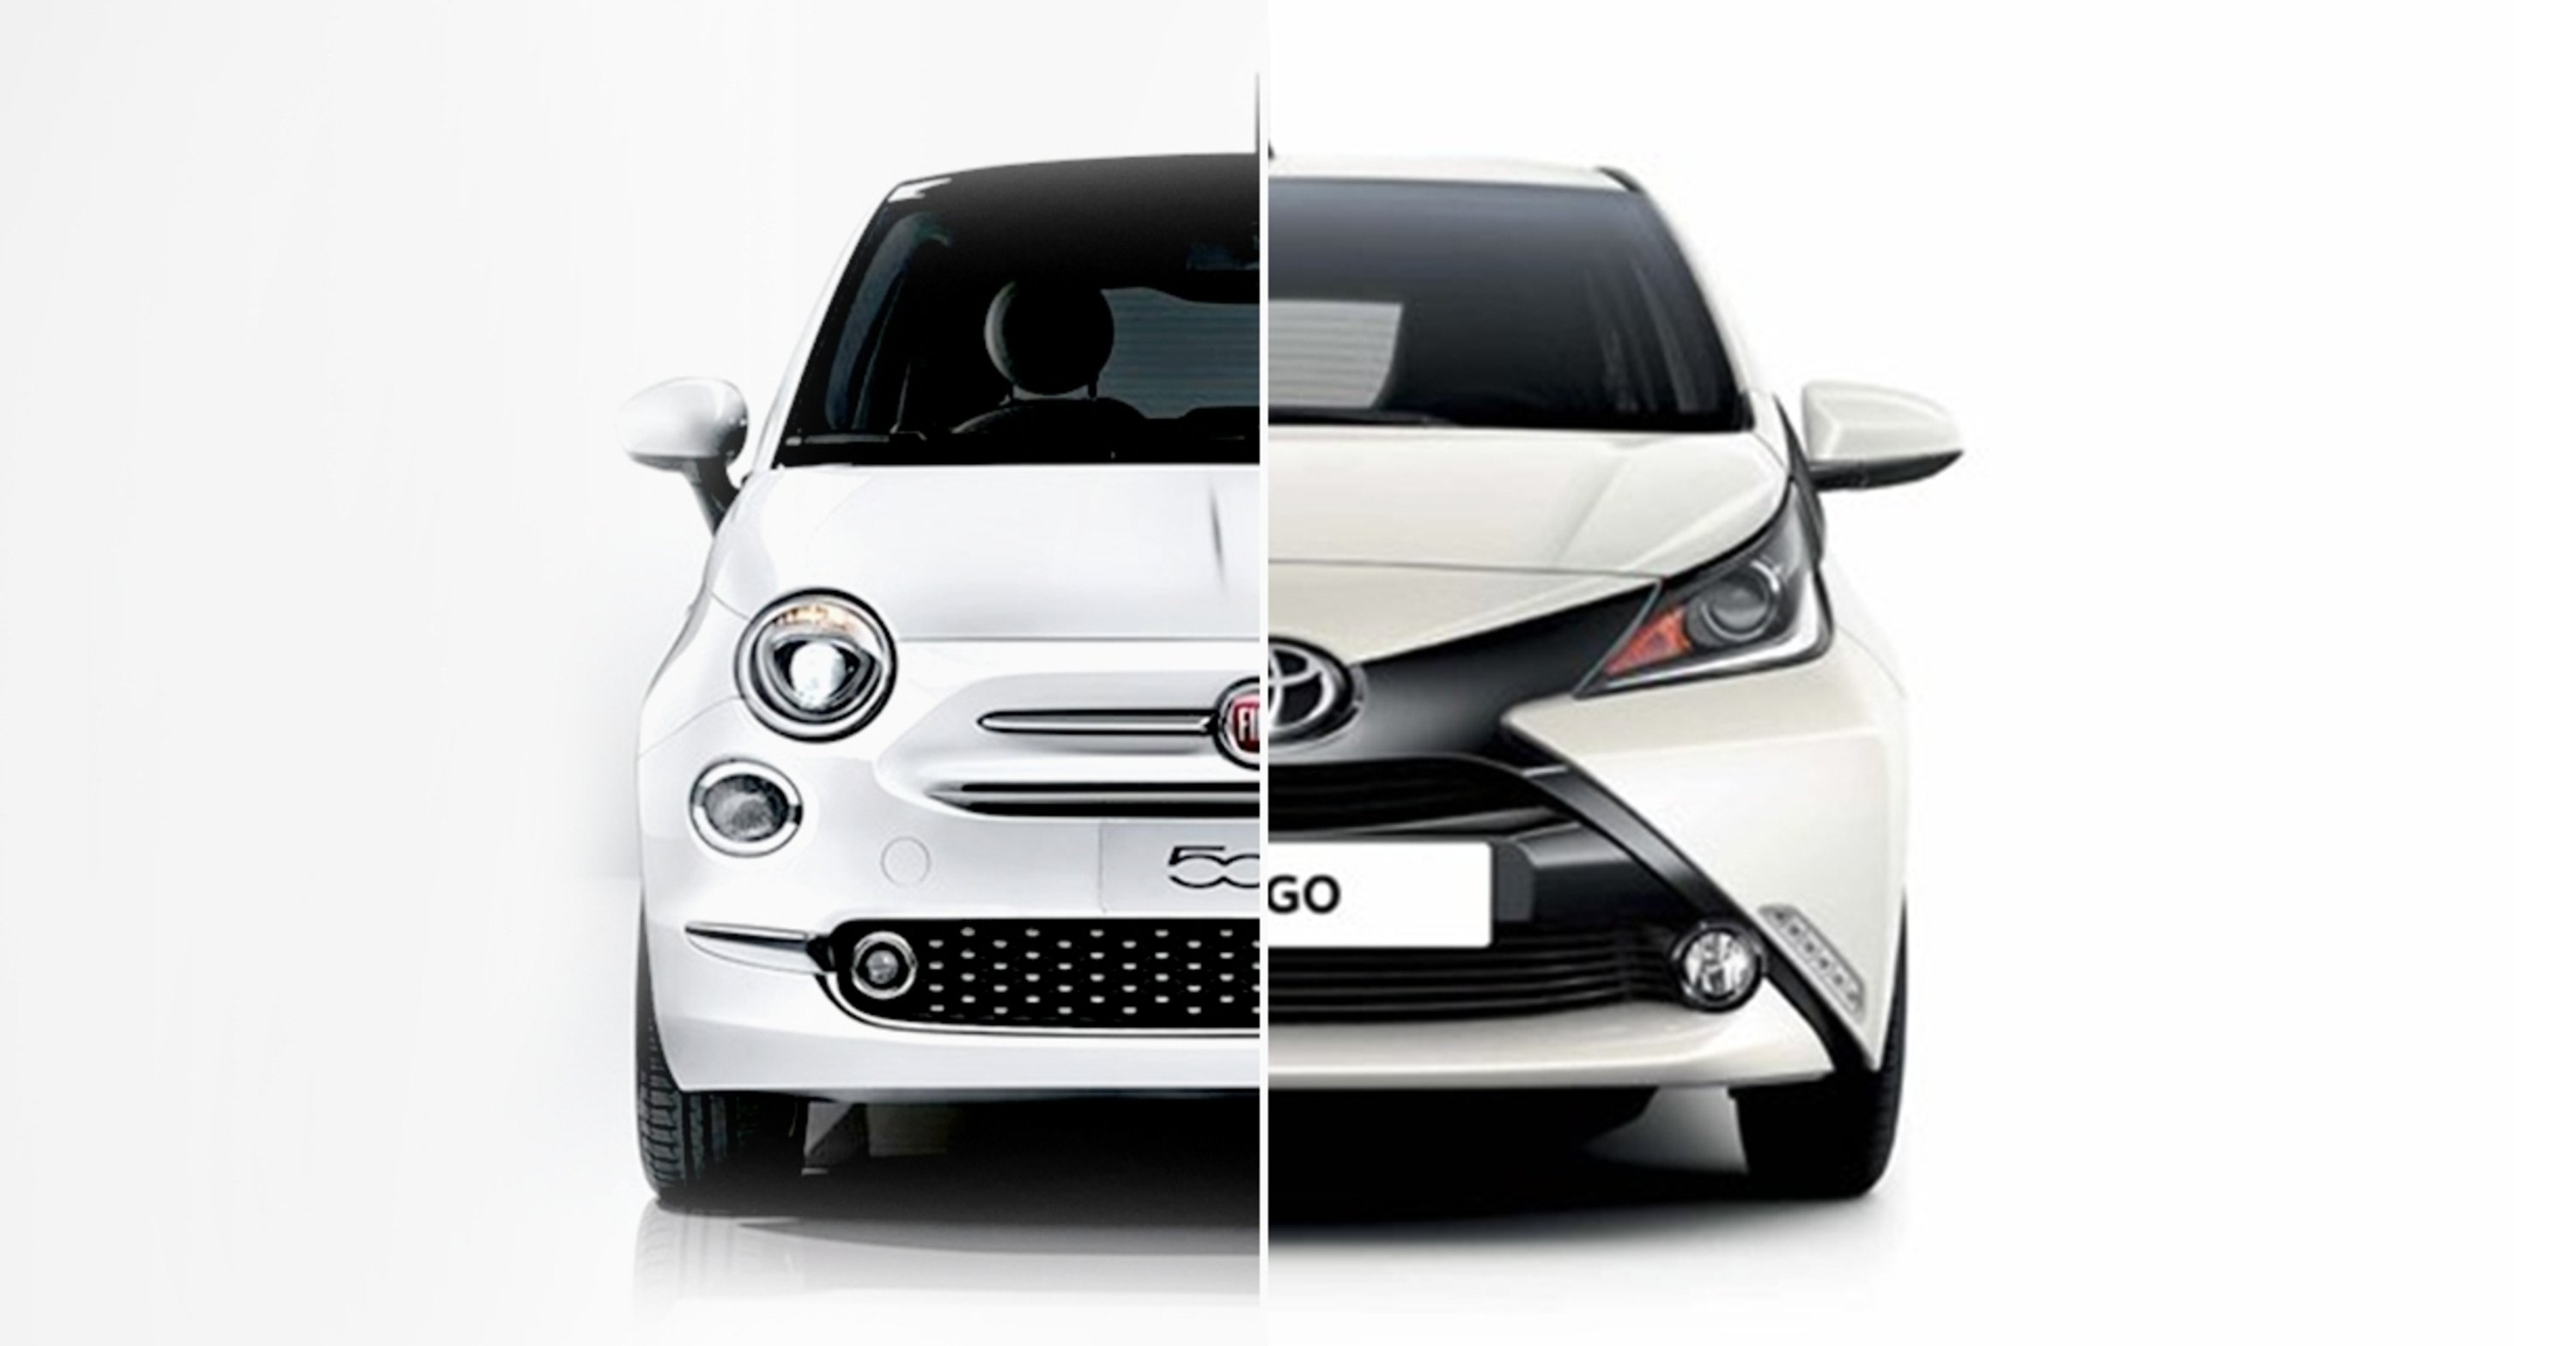 Quale comprare, Confronto: Toyota Aygo 1.0 Vs Fiat 500 1.2